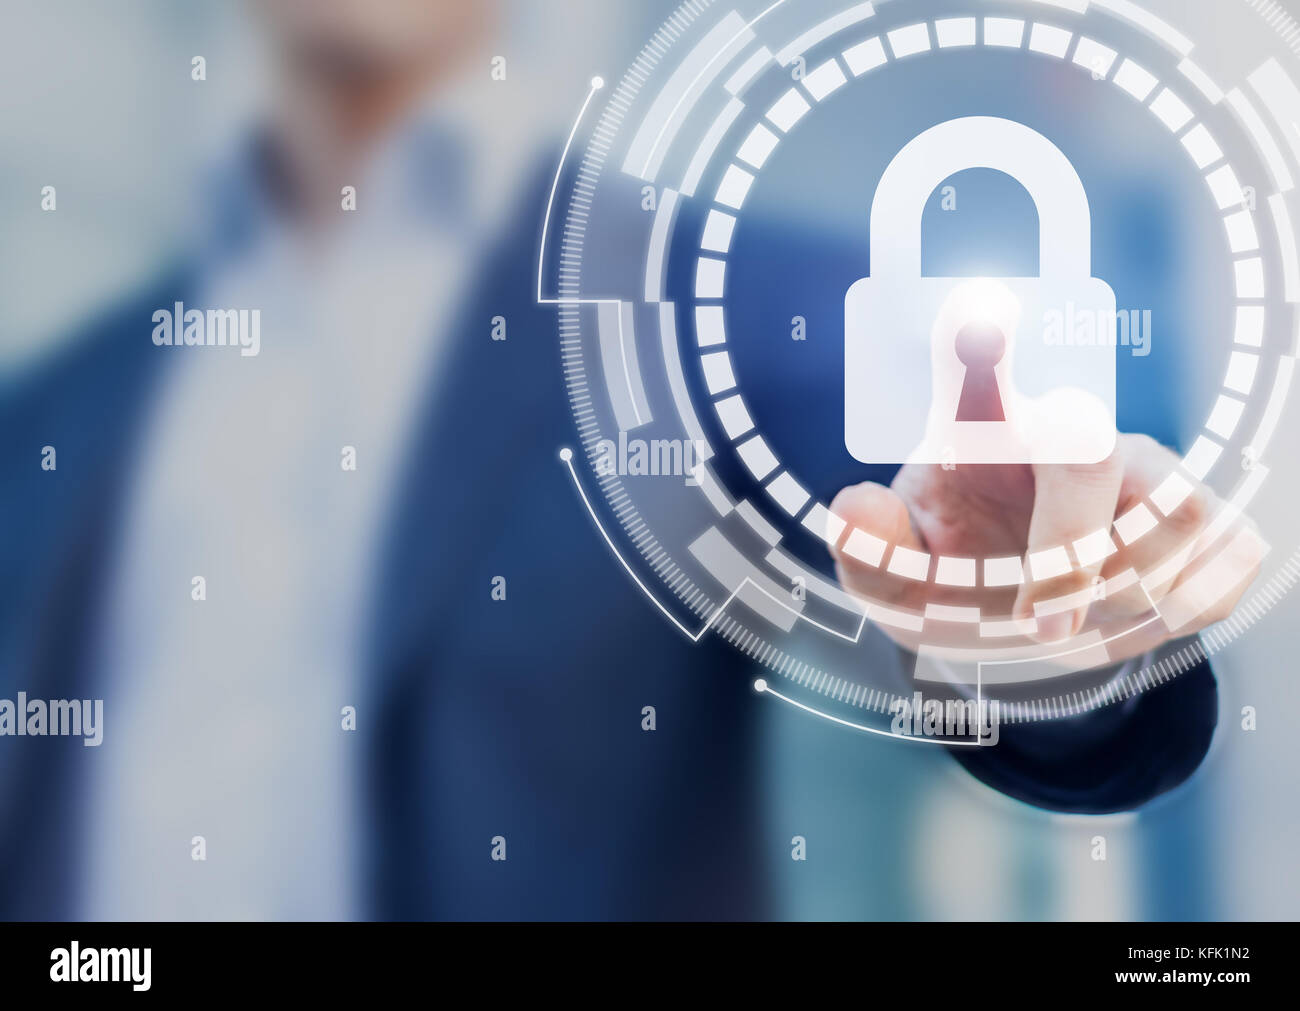 Cyber sécurité et protection de la confidentialité des données sur internet concept avec l'utilisateur d'affaires touchant l'accès sécurisé login bouton avec l'icône de verrouillage sur les interf Banque D'Images